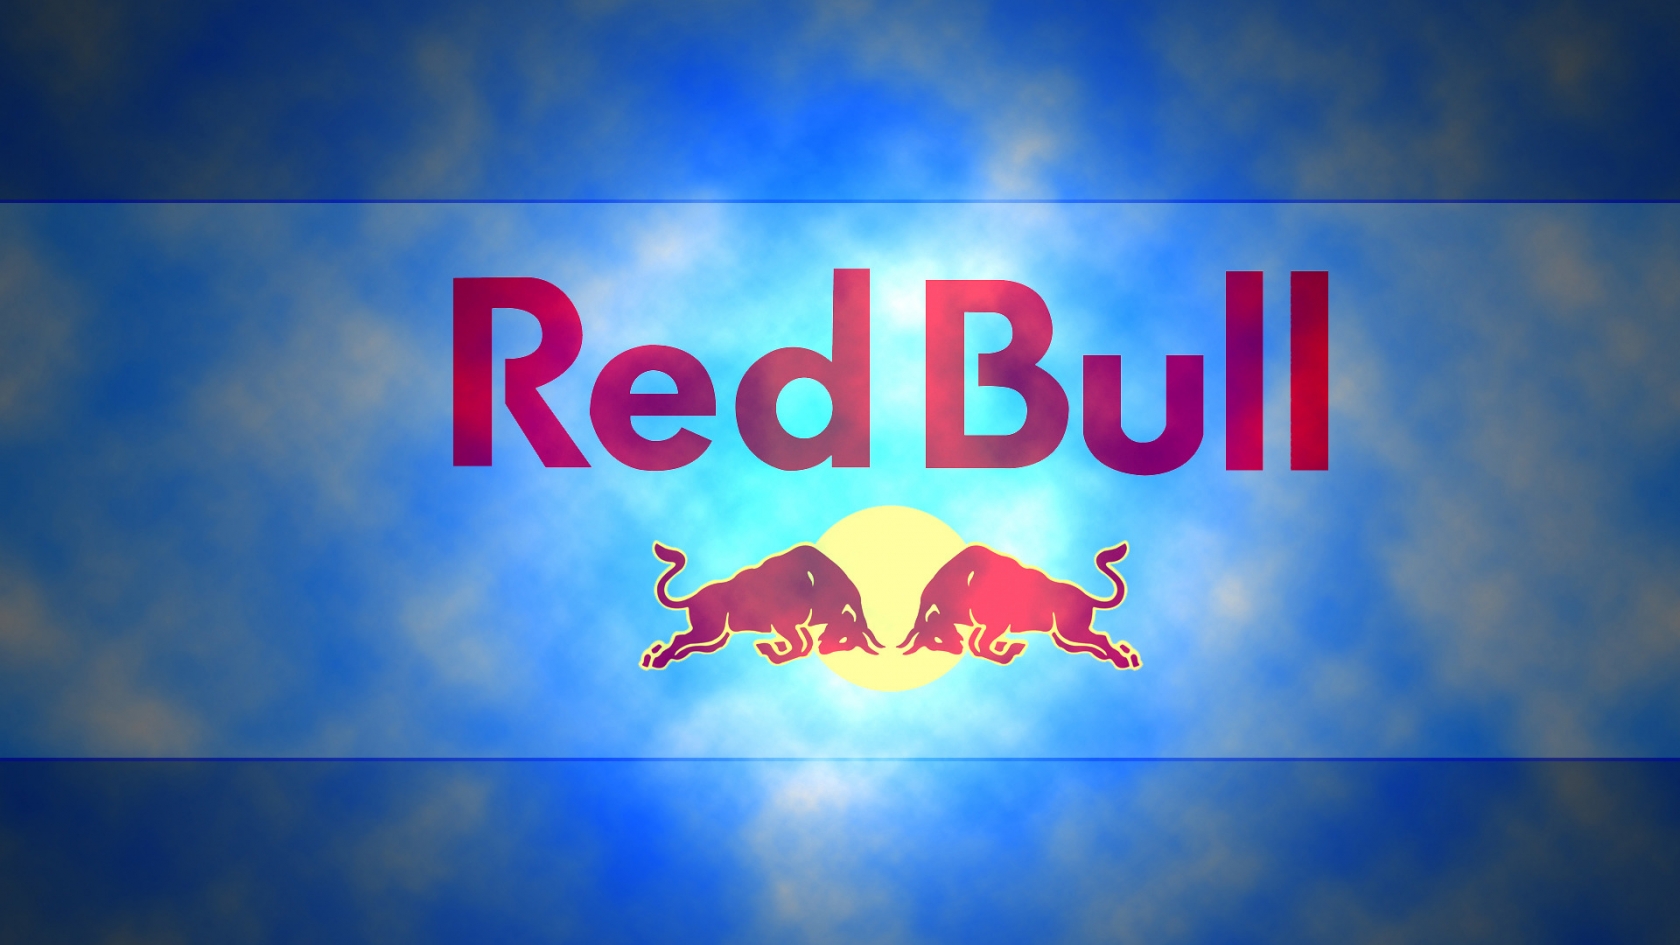 Red Bull Logo for 1680 x 945 HDTV resolution